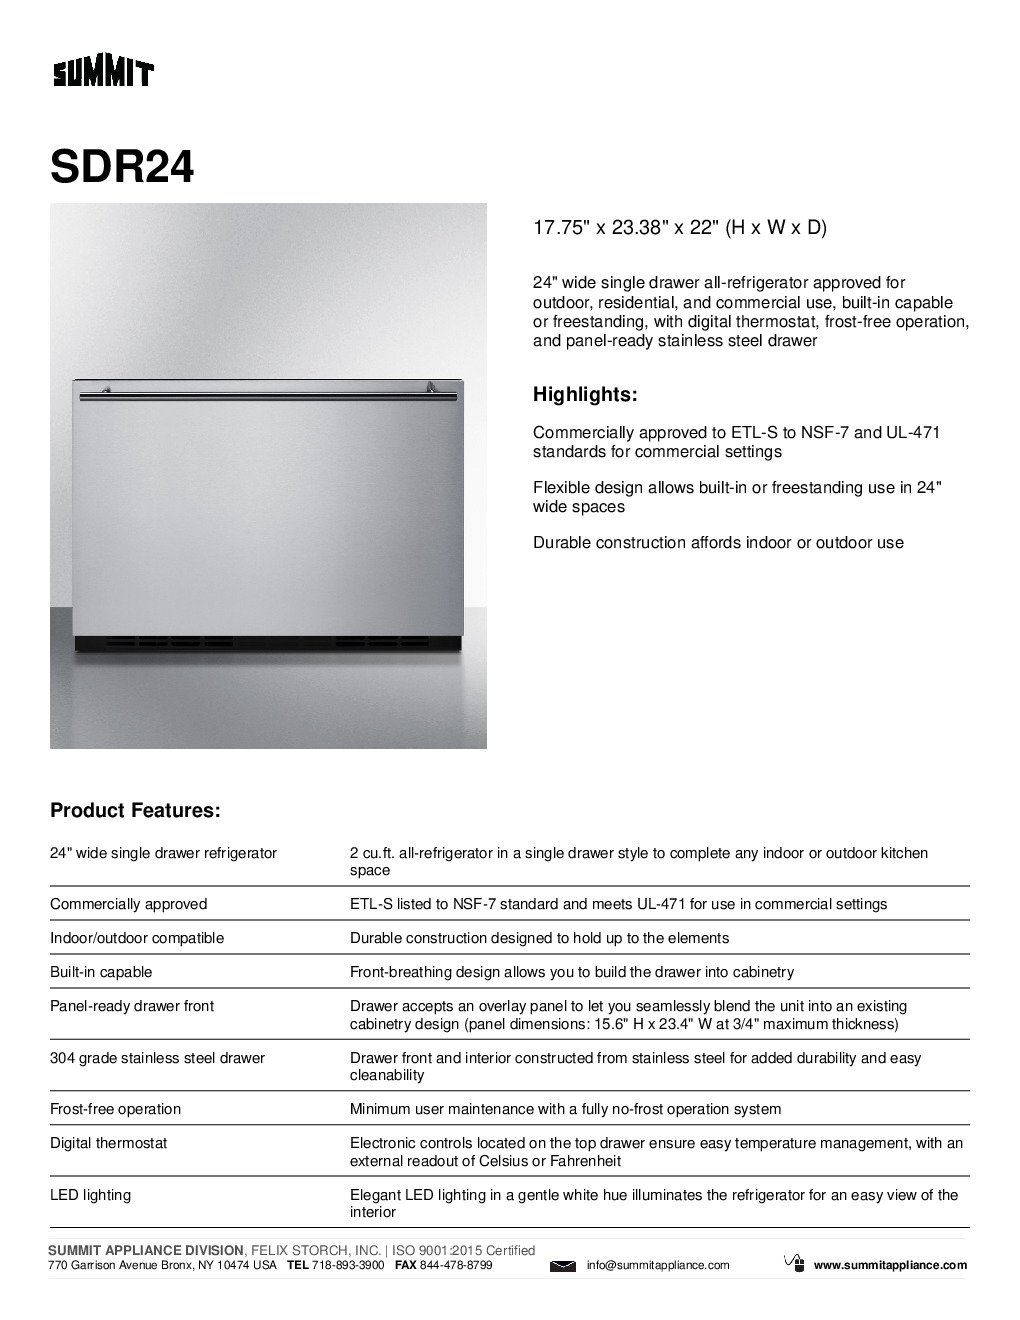 Summit SDR24 Reach-In Undercounter Refrigerator